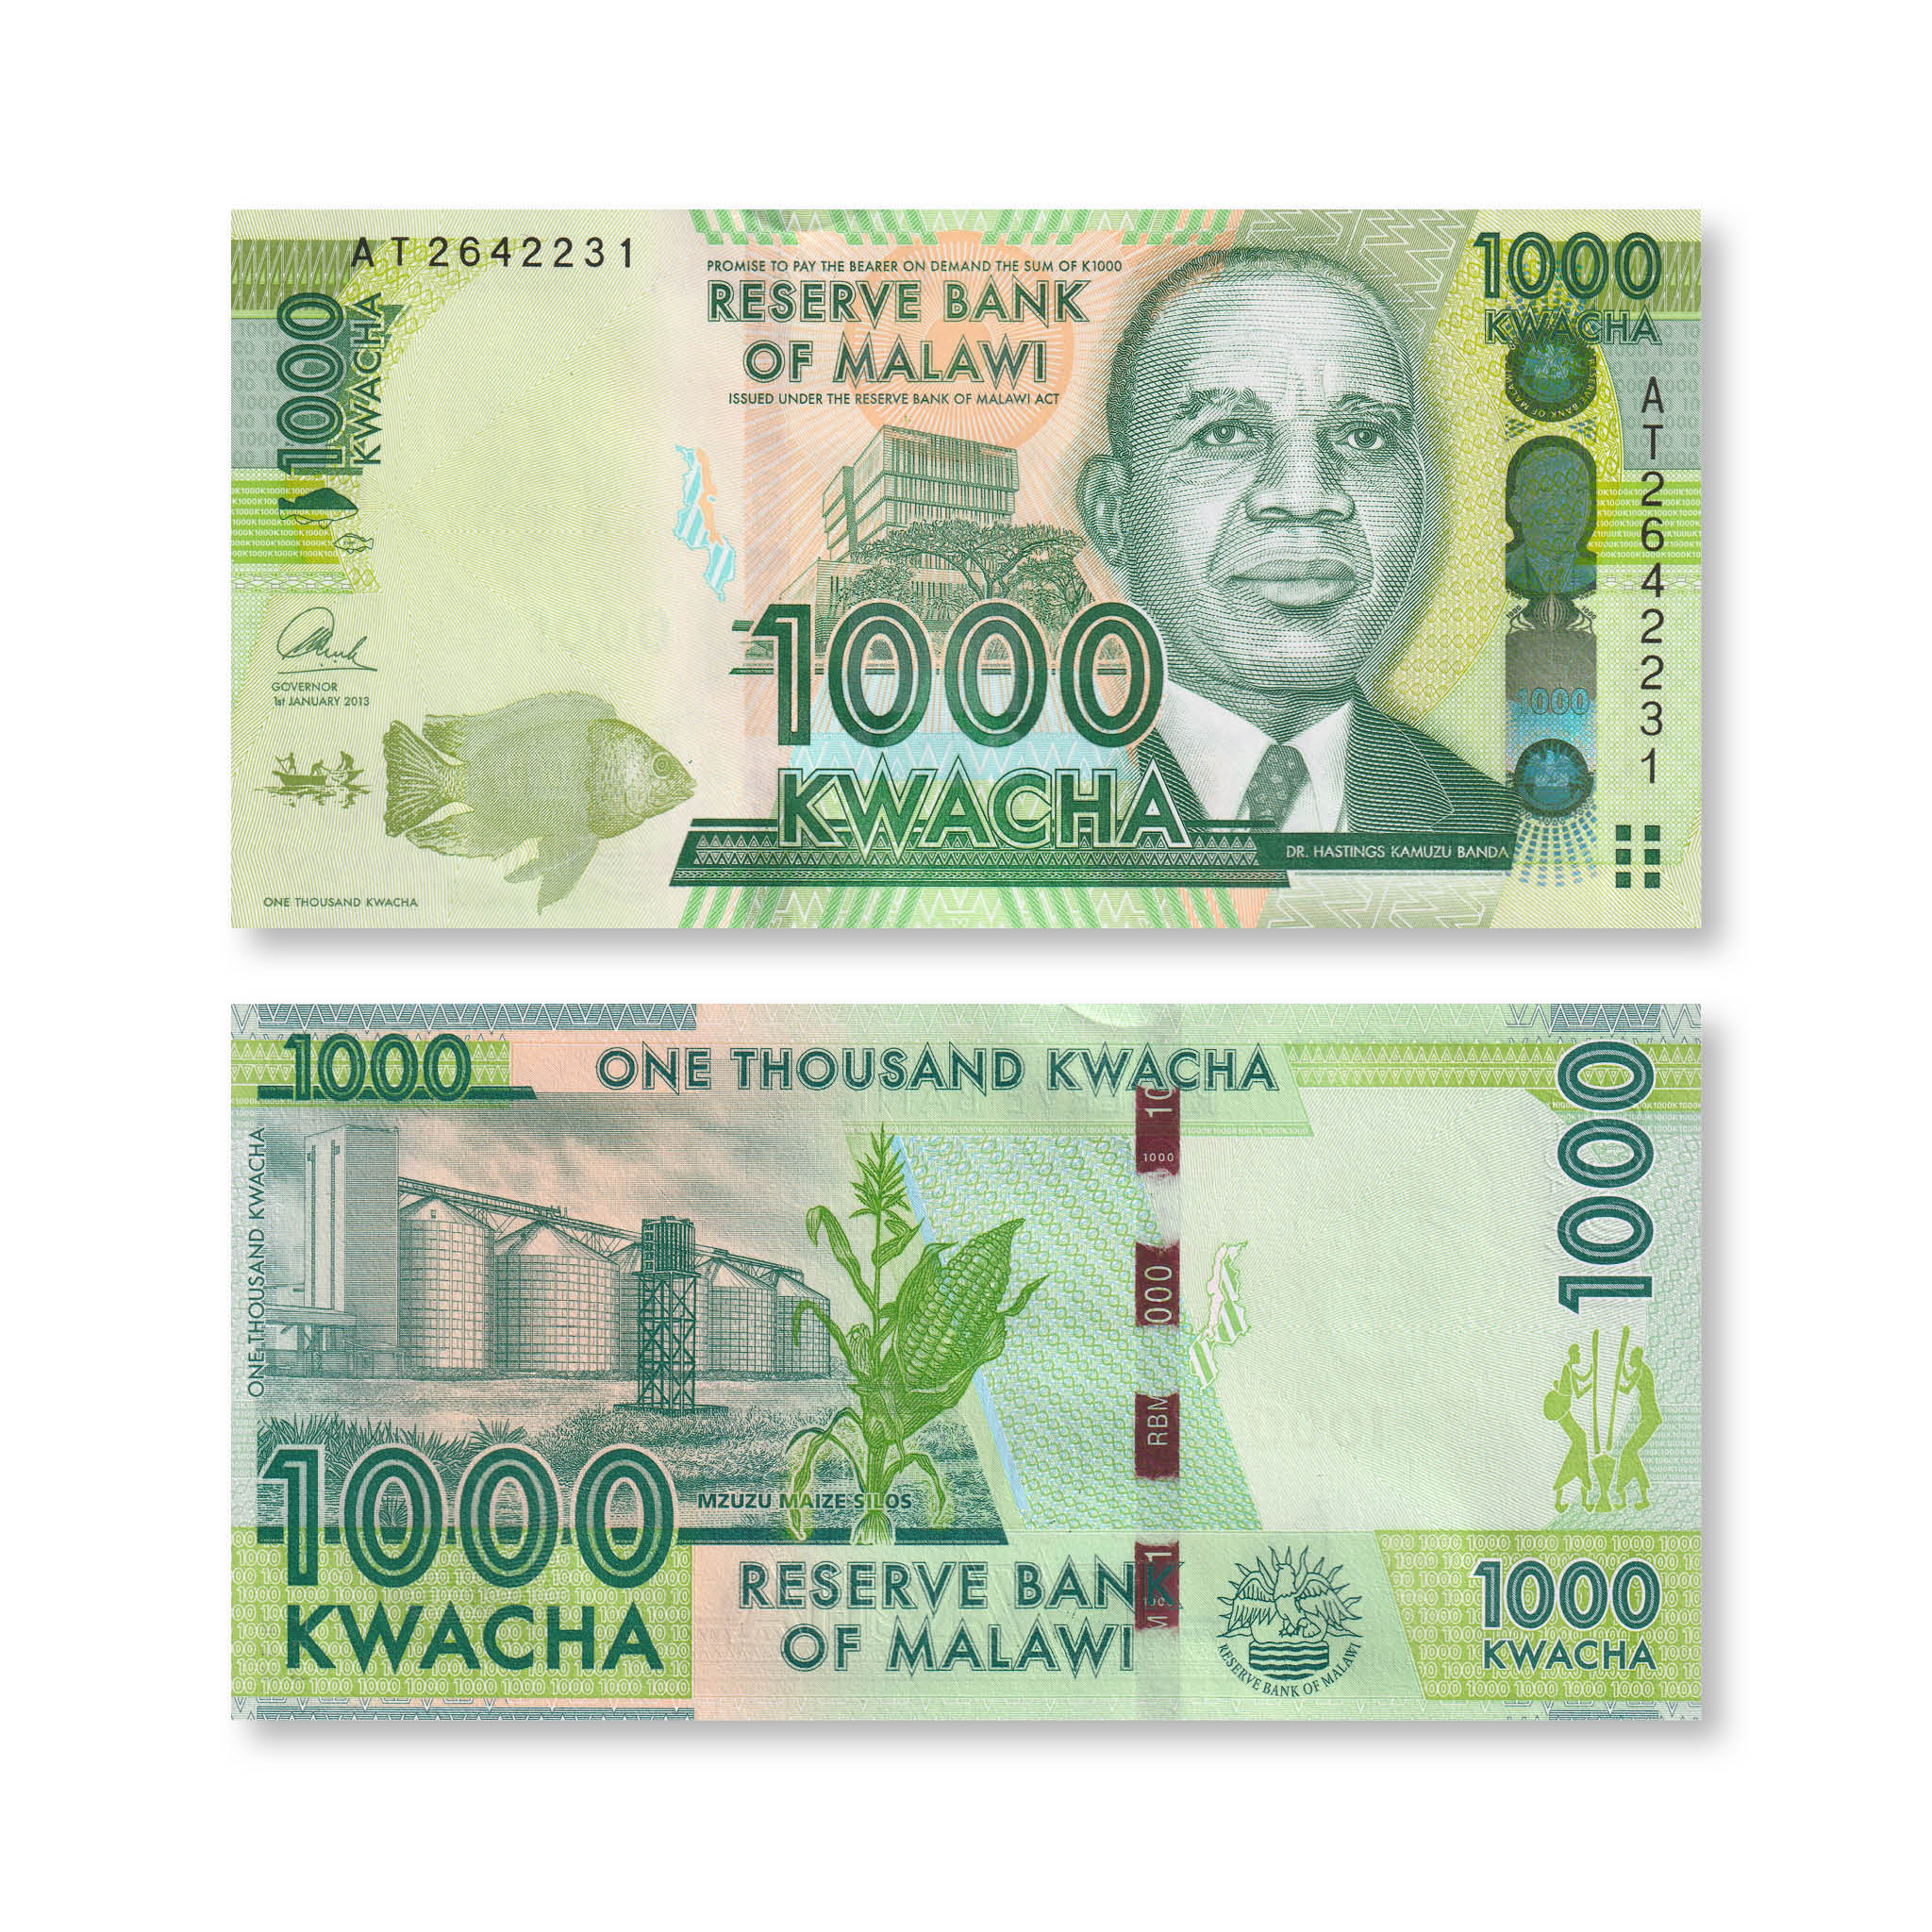 Malawi 1000 Kwacha, 2013, B155b, P62b, UNC - Robert's World Money - World Banknotes